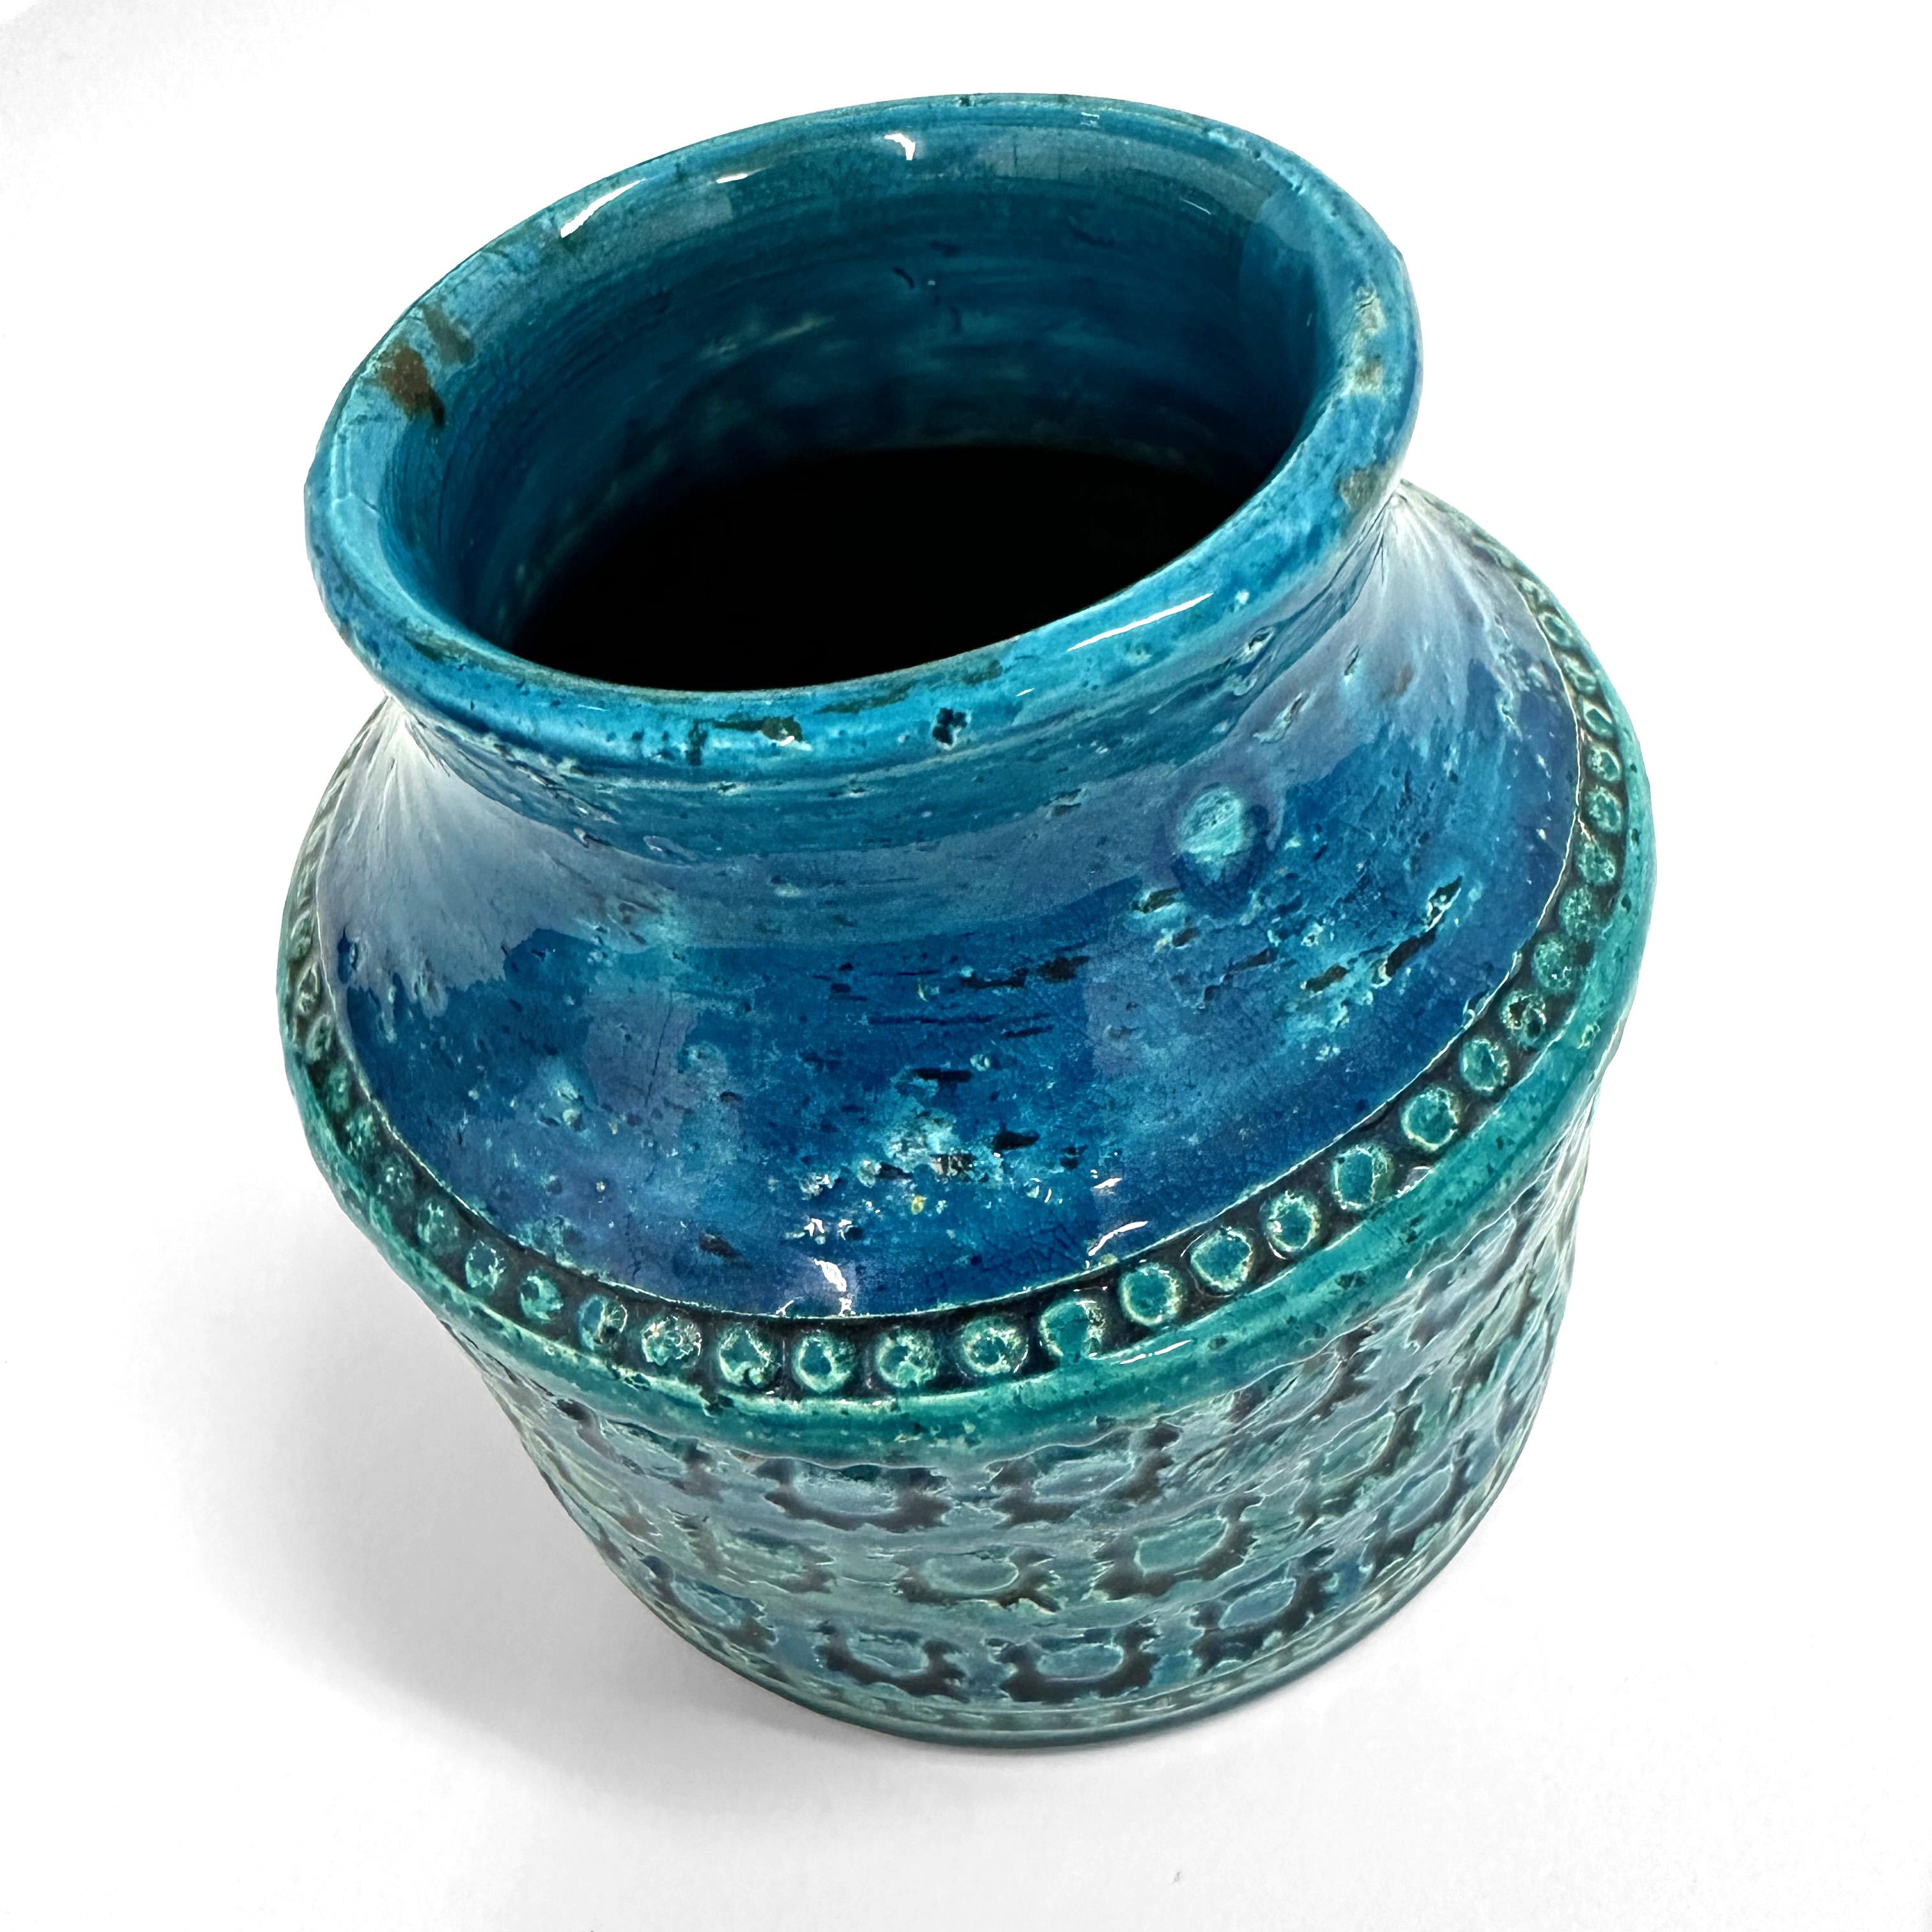 Eine weithalsige Vase aus Terrakotta-Keramik, entworfen von Aldo Londi für Bitossi in Italien in den späten 1950er oder frühen 1960er Jahren.

Handgefertigt in Italien mit handgeprägten, spektakulären geometrischen Mustern in leuchtendem Türkis und